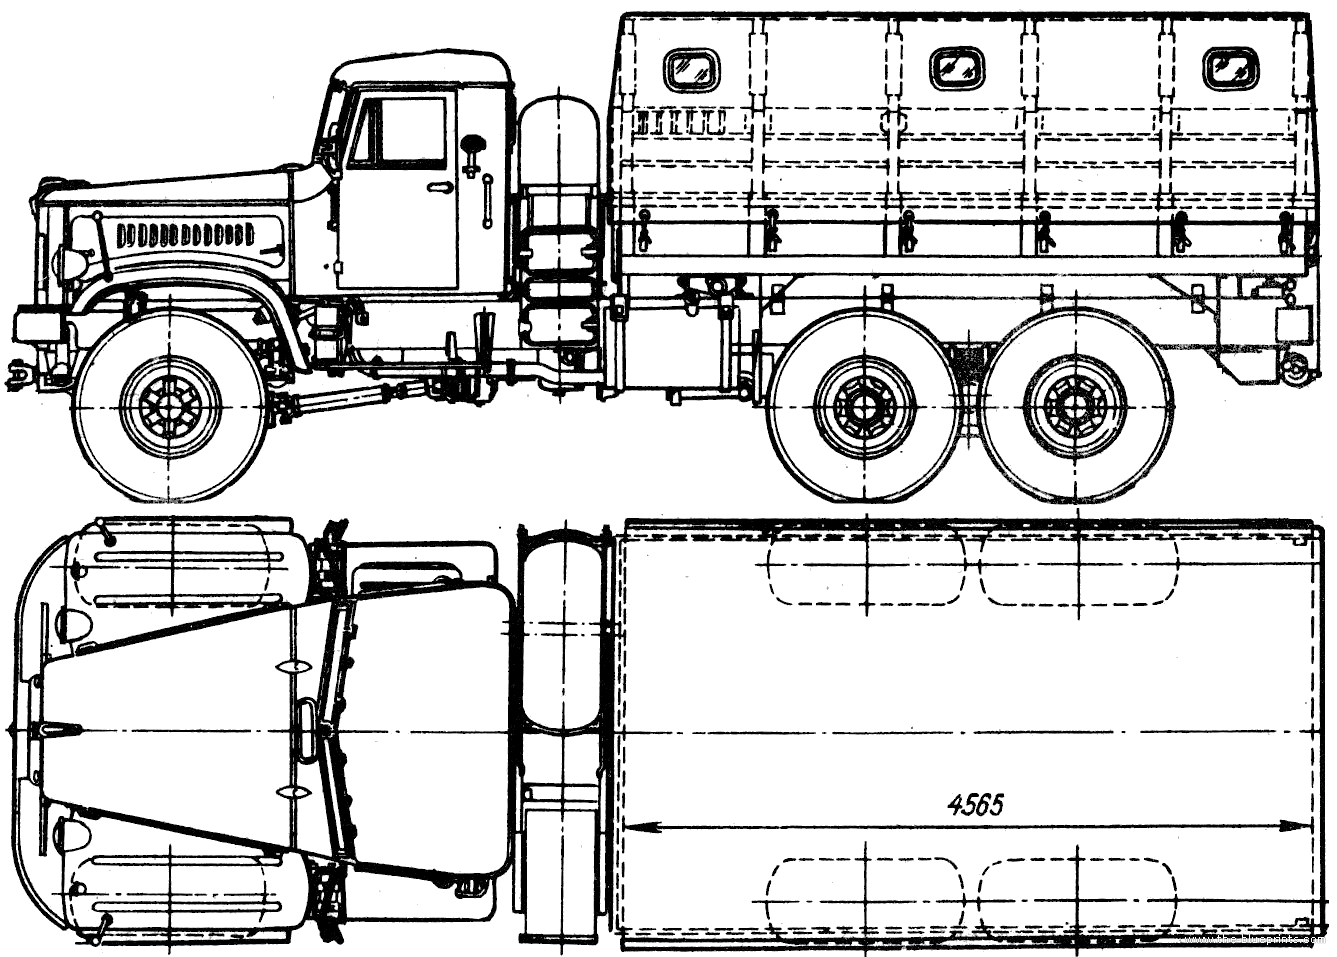 The-Blueprints.com - Blueprints > Trucks > KrAZ > KrAZ-